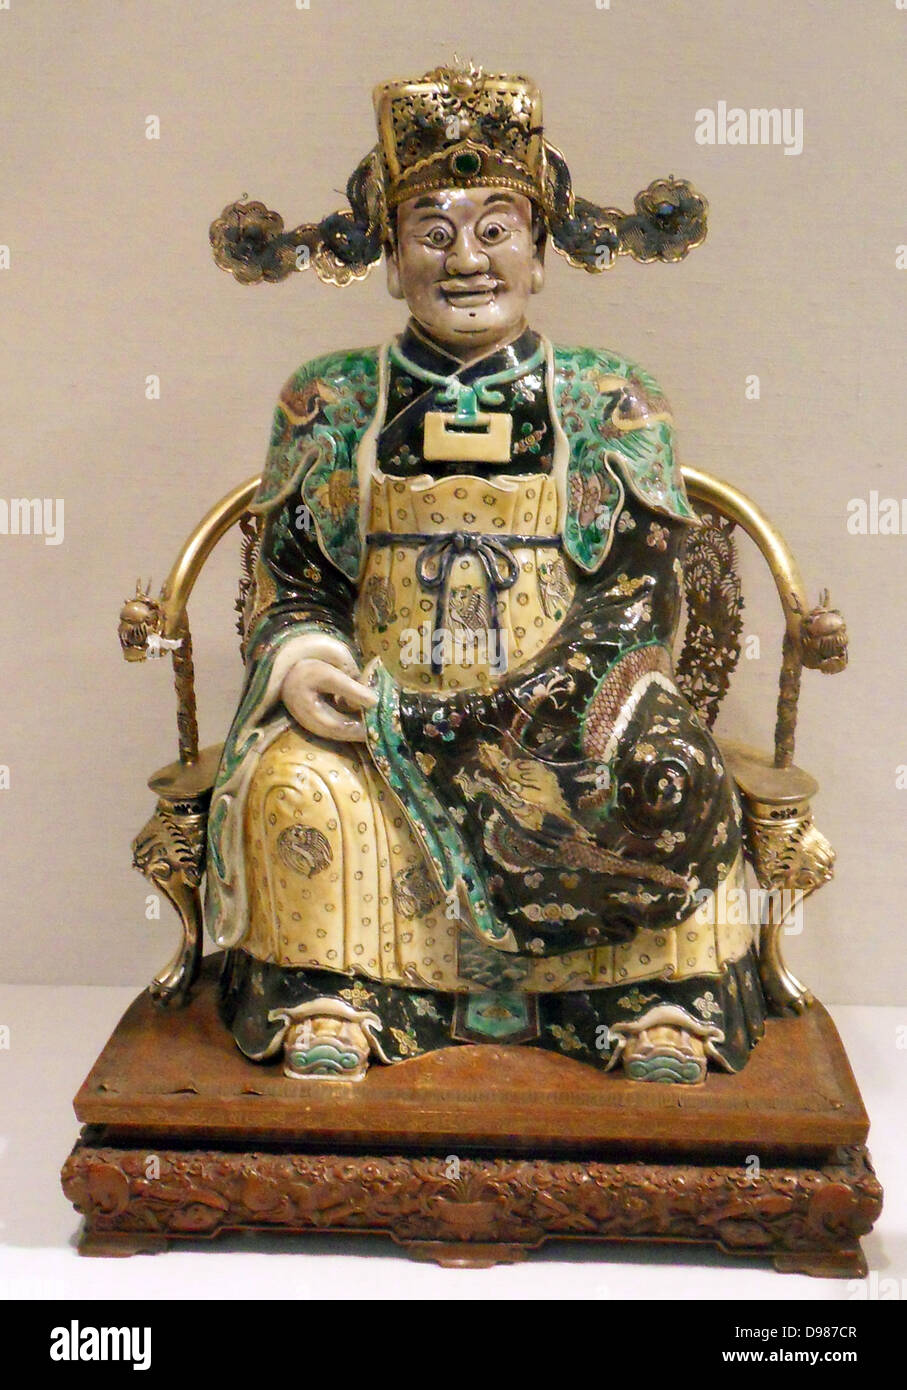 La figure, peut-être le Dieu de la richesse dans son aspect militaire de la fin du 17e-début du 18e siècle. Dynastie Qing, période Kangxi (1662-1722). Porcelaine peinte en émaux famille verte sur le biscuit Banque D'Images